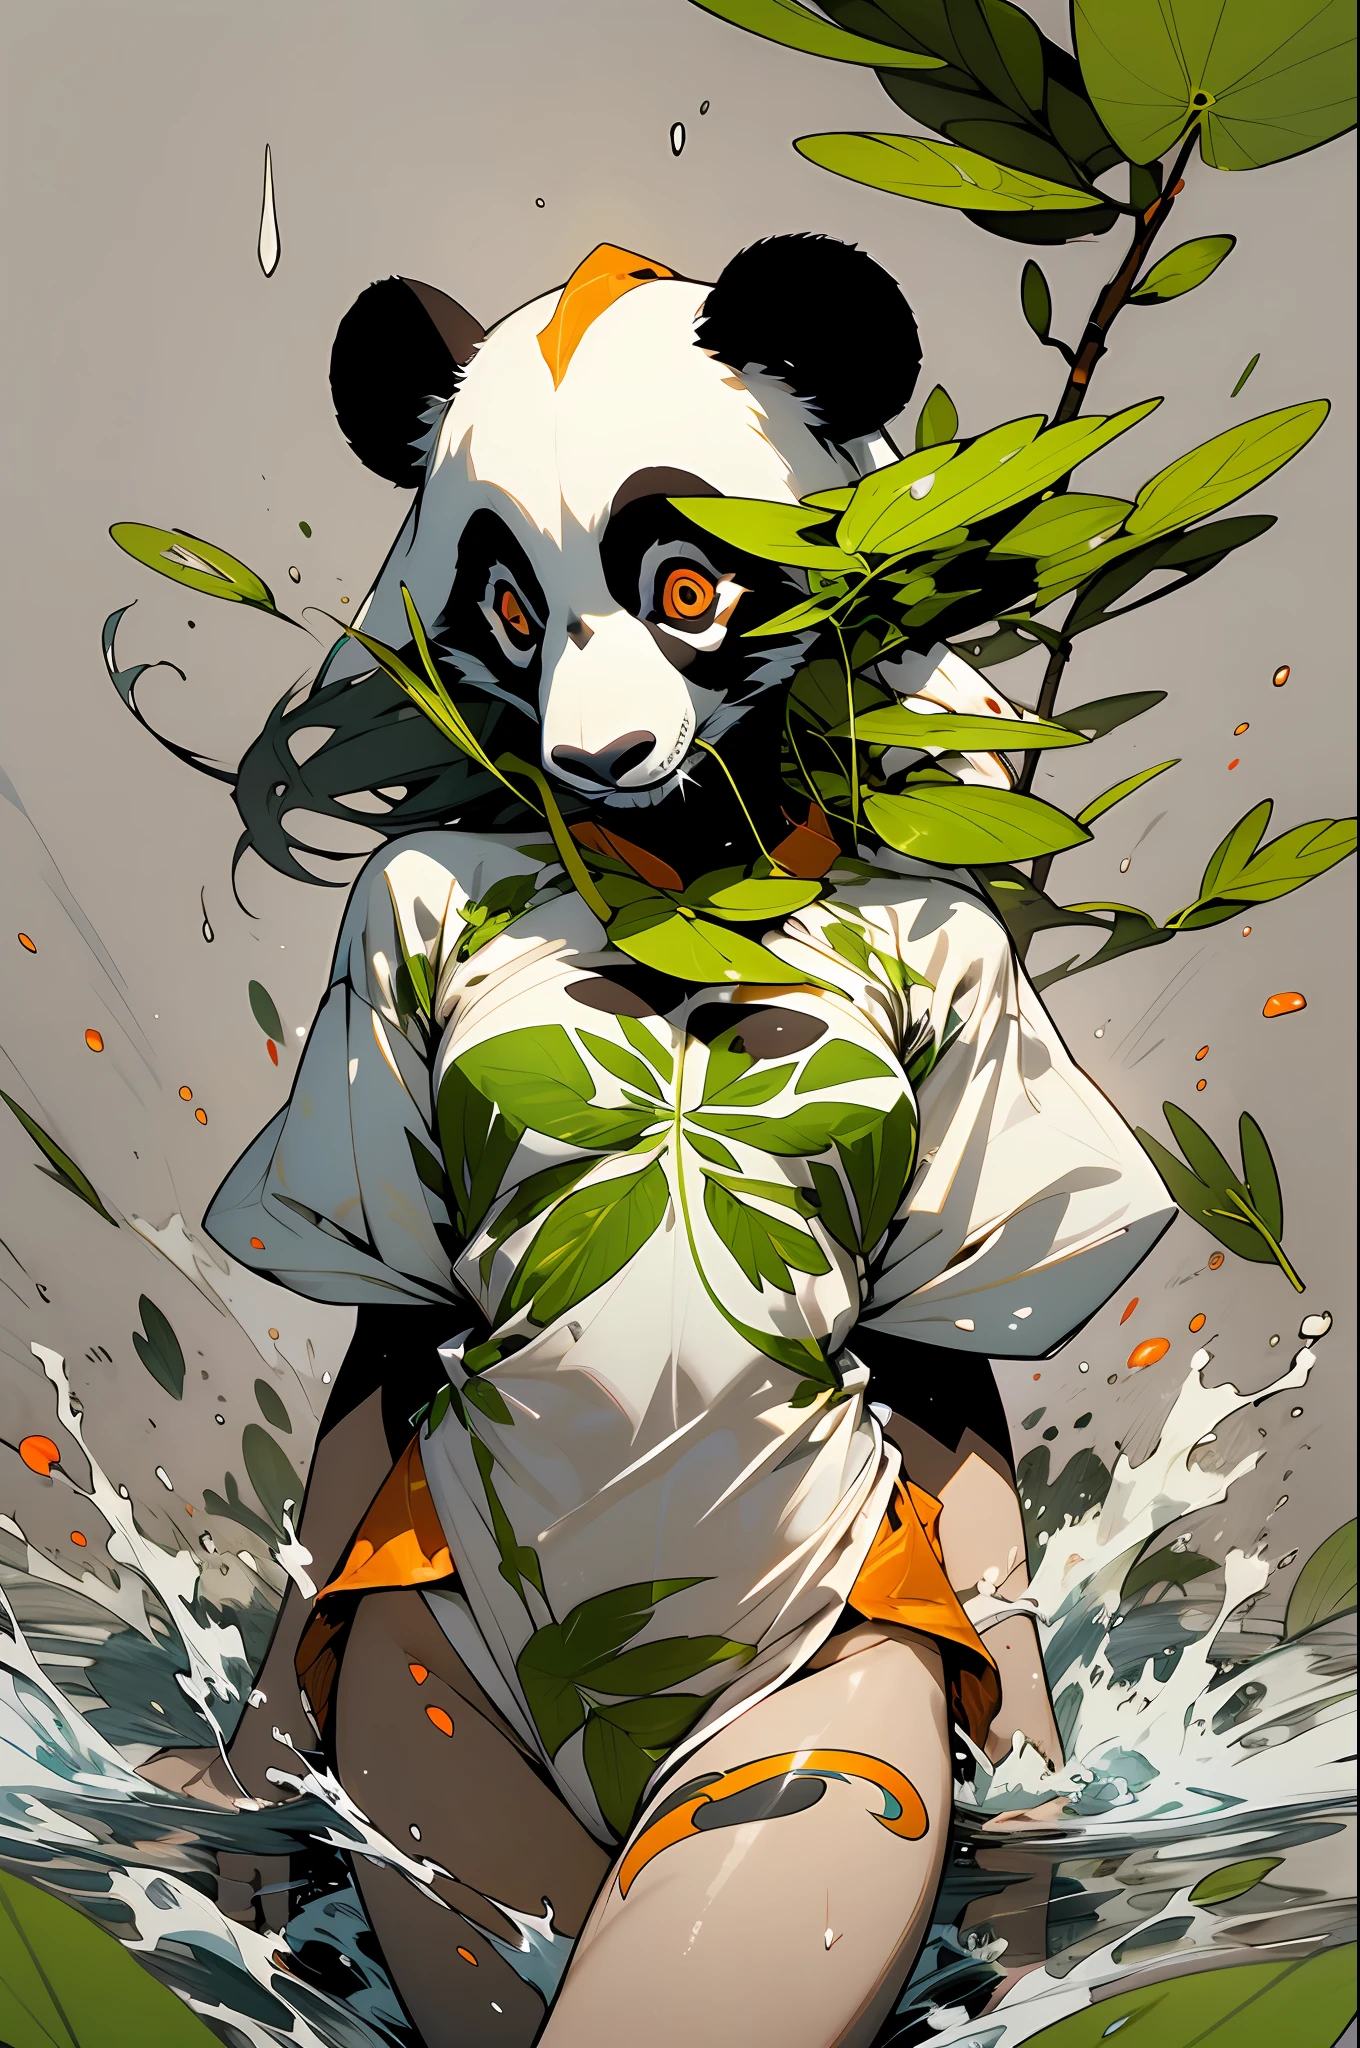 verde: 1.5, orange: 1.1, Weiß: 1.3, Gelb: 1.3, (Panda-Mädchen), halb weißes, halb dunkles Haar, detaillierte Tattoos, Rüstung des Terrors, transparenter Körper, Farbtupfer im Hintergrund, Kleider